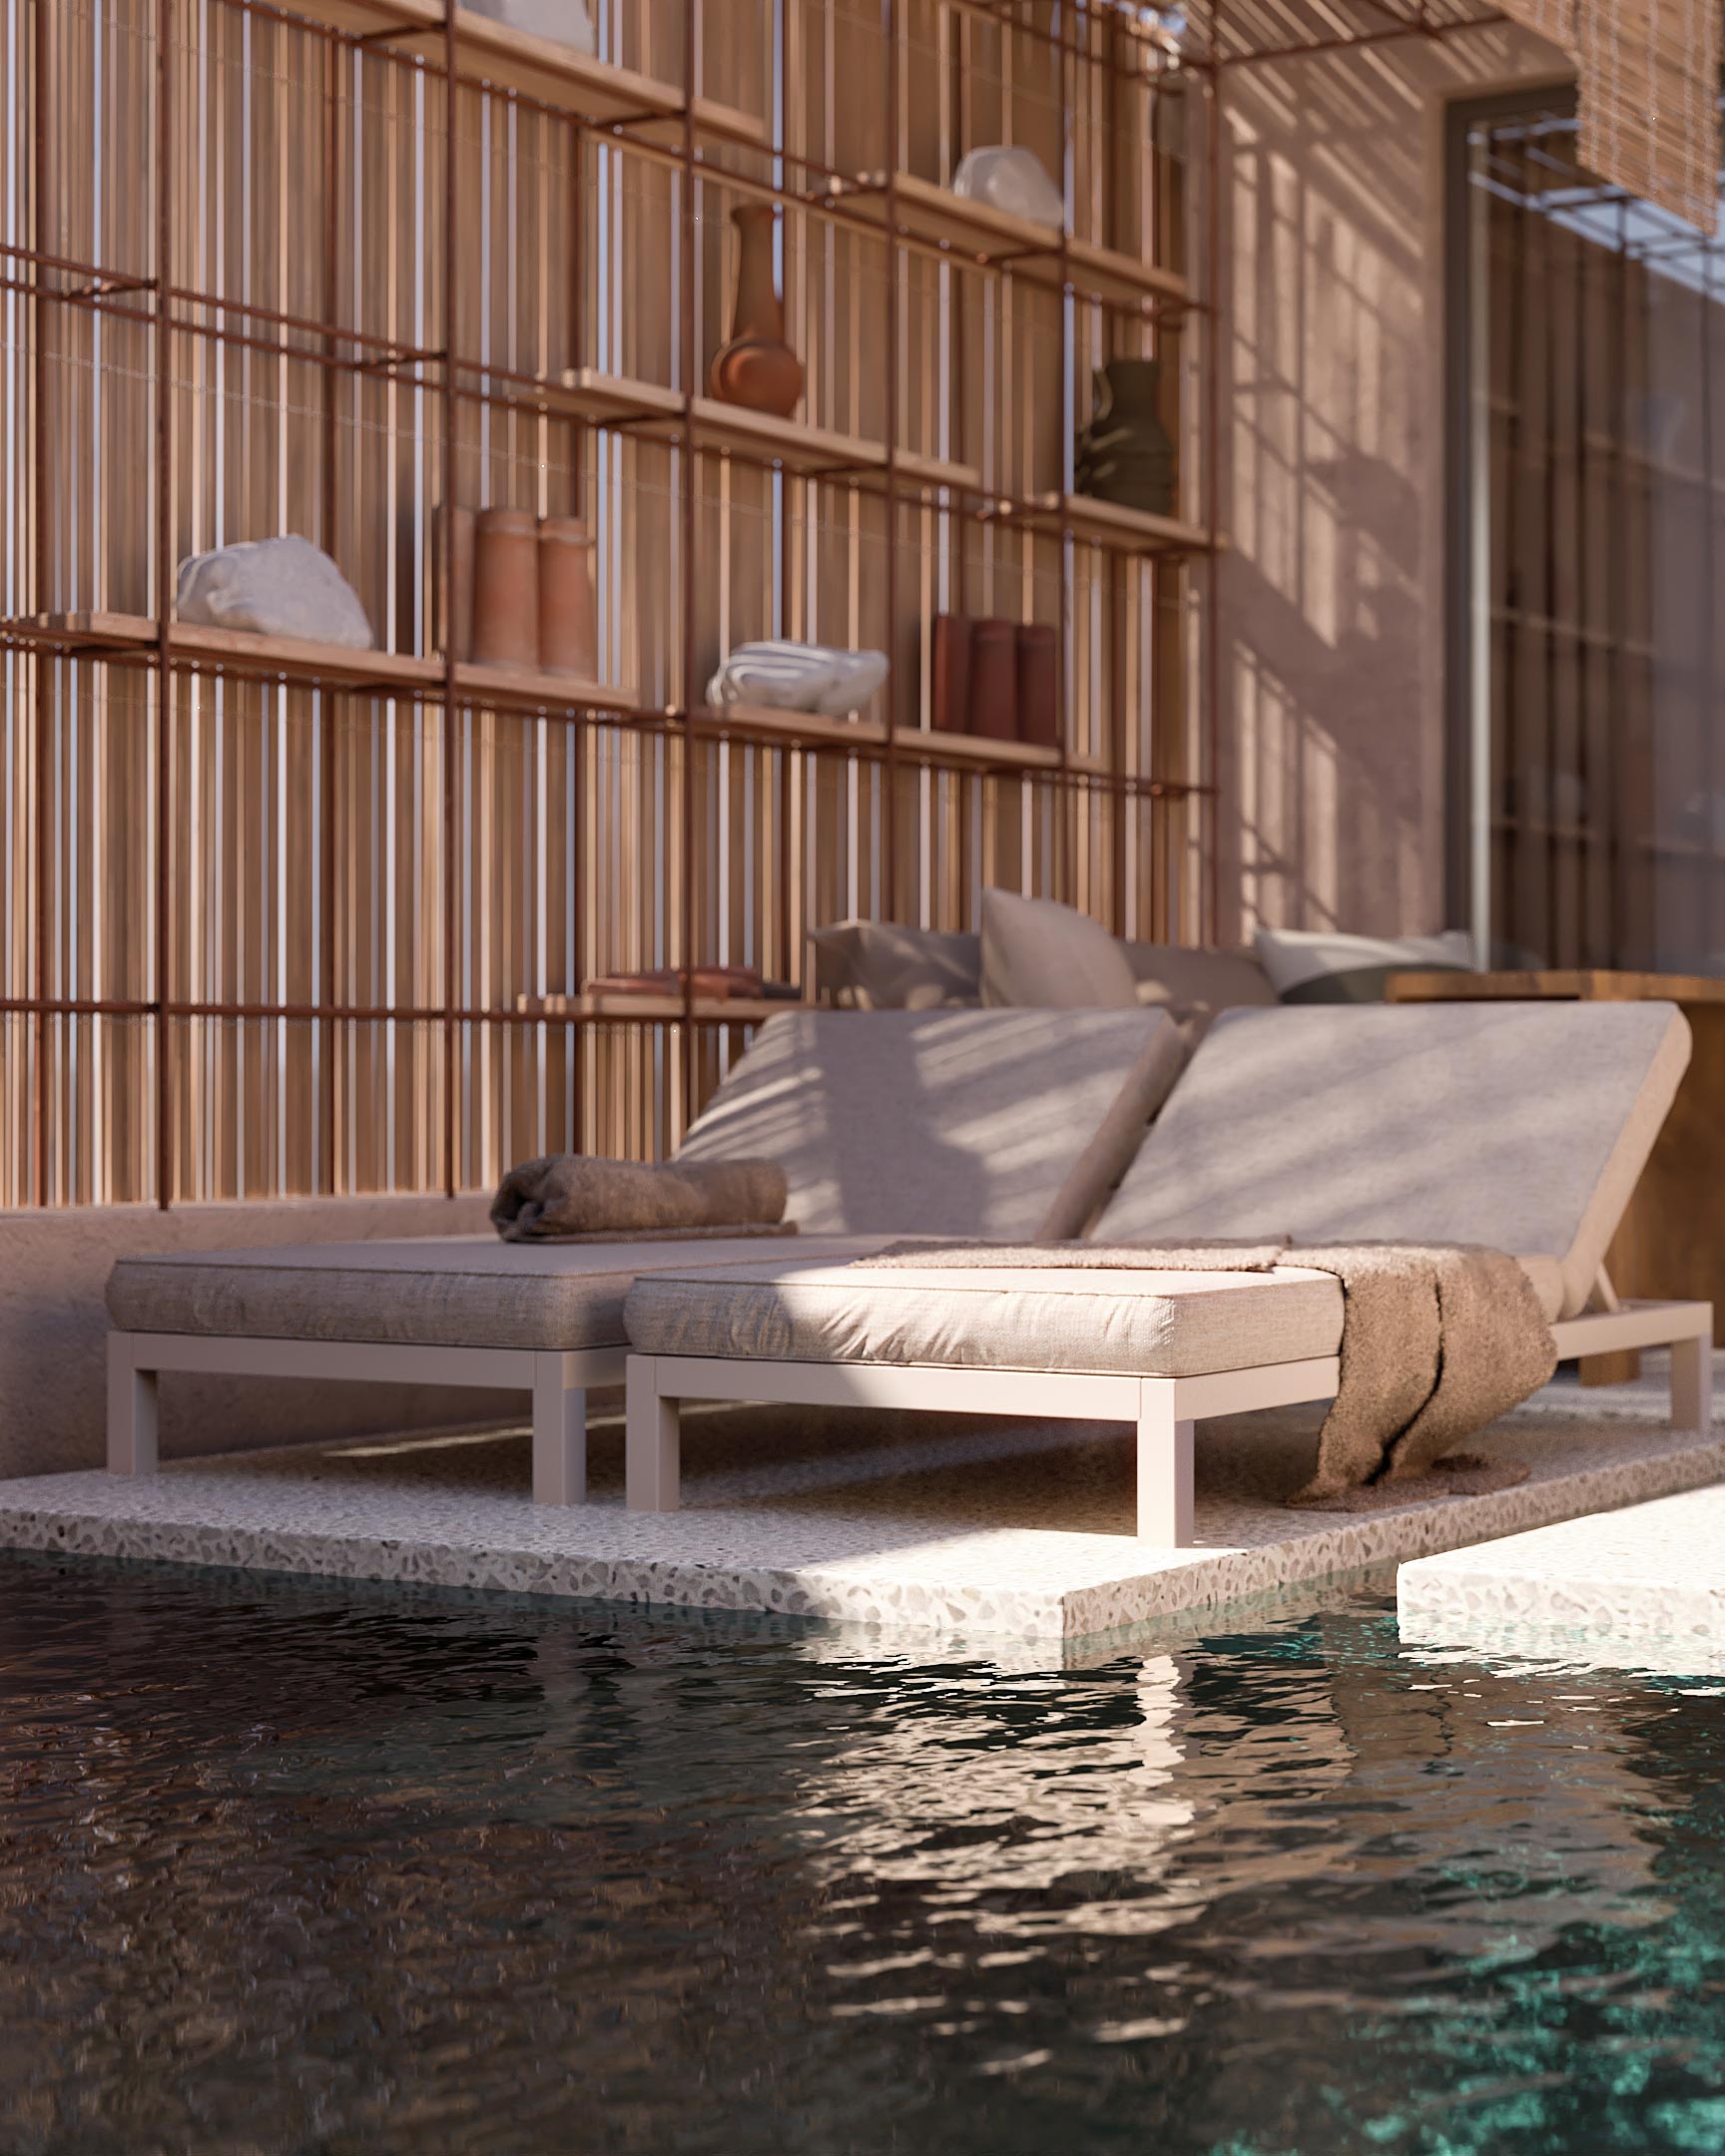 Hotel Almyros Corfu, summer holidays in greece,, 3d visualization